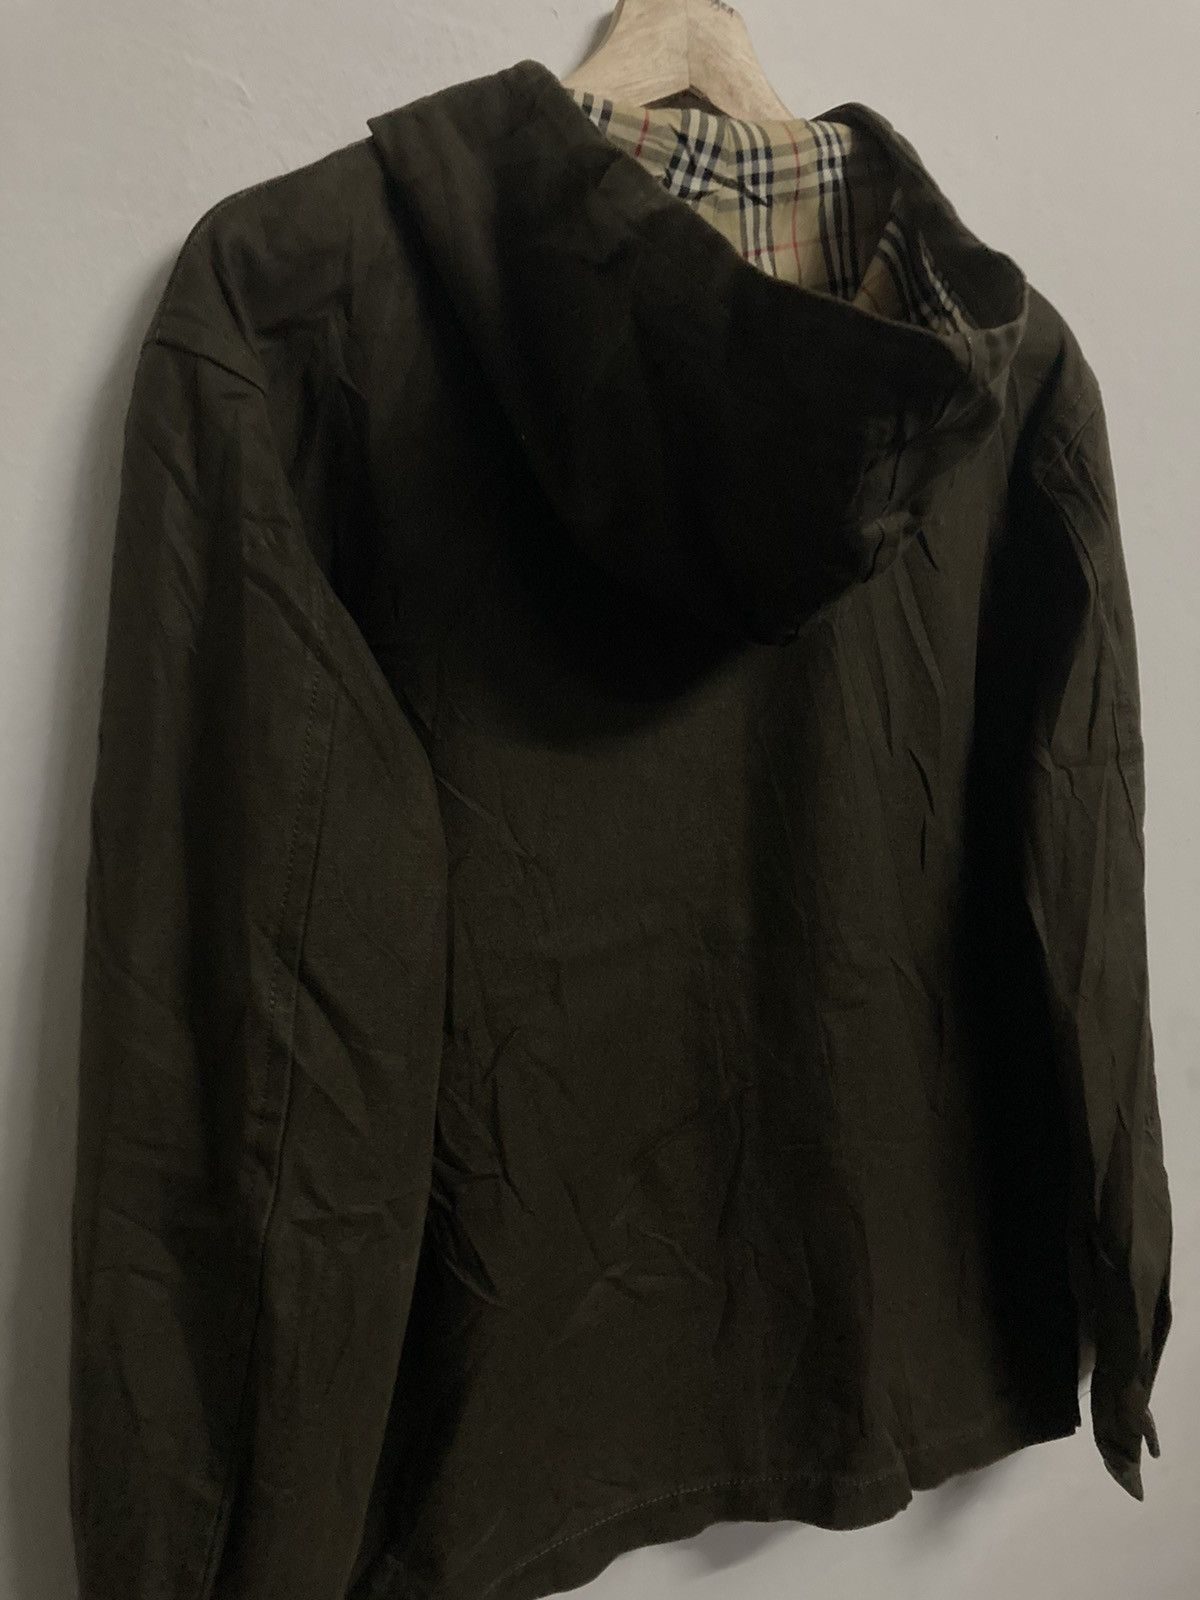 Burberrys Blue Label Hooded Jacket in Size 38 - 6